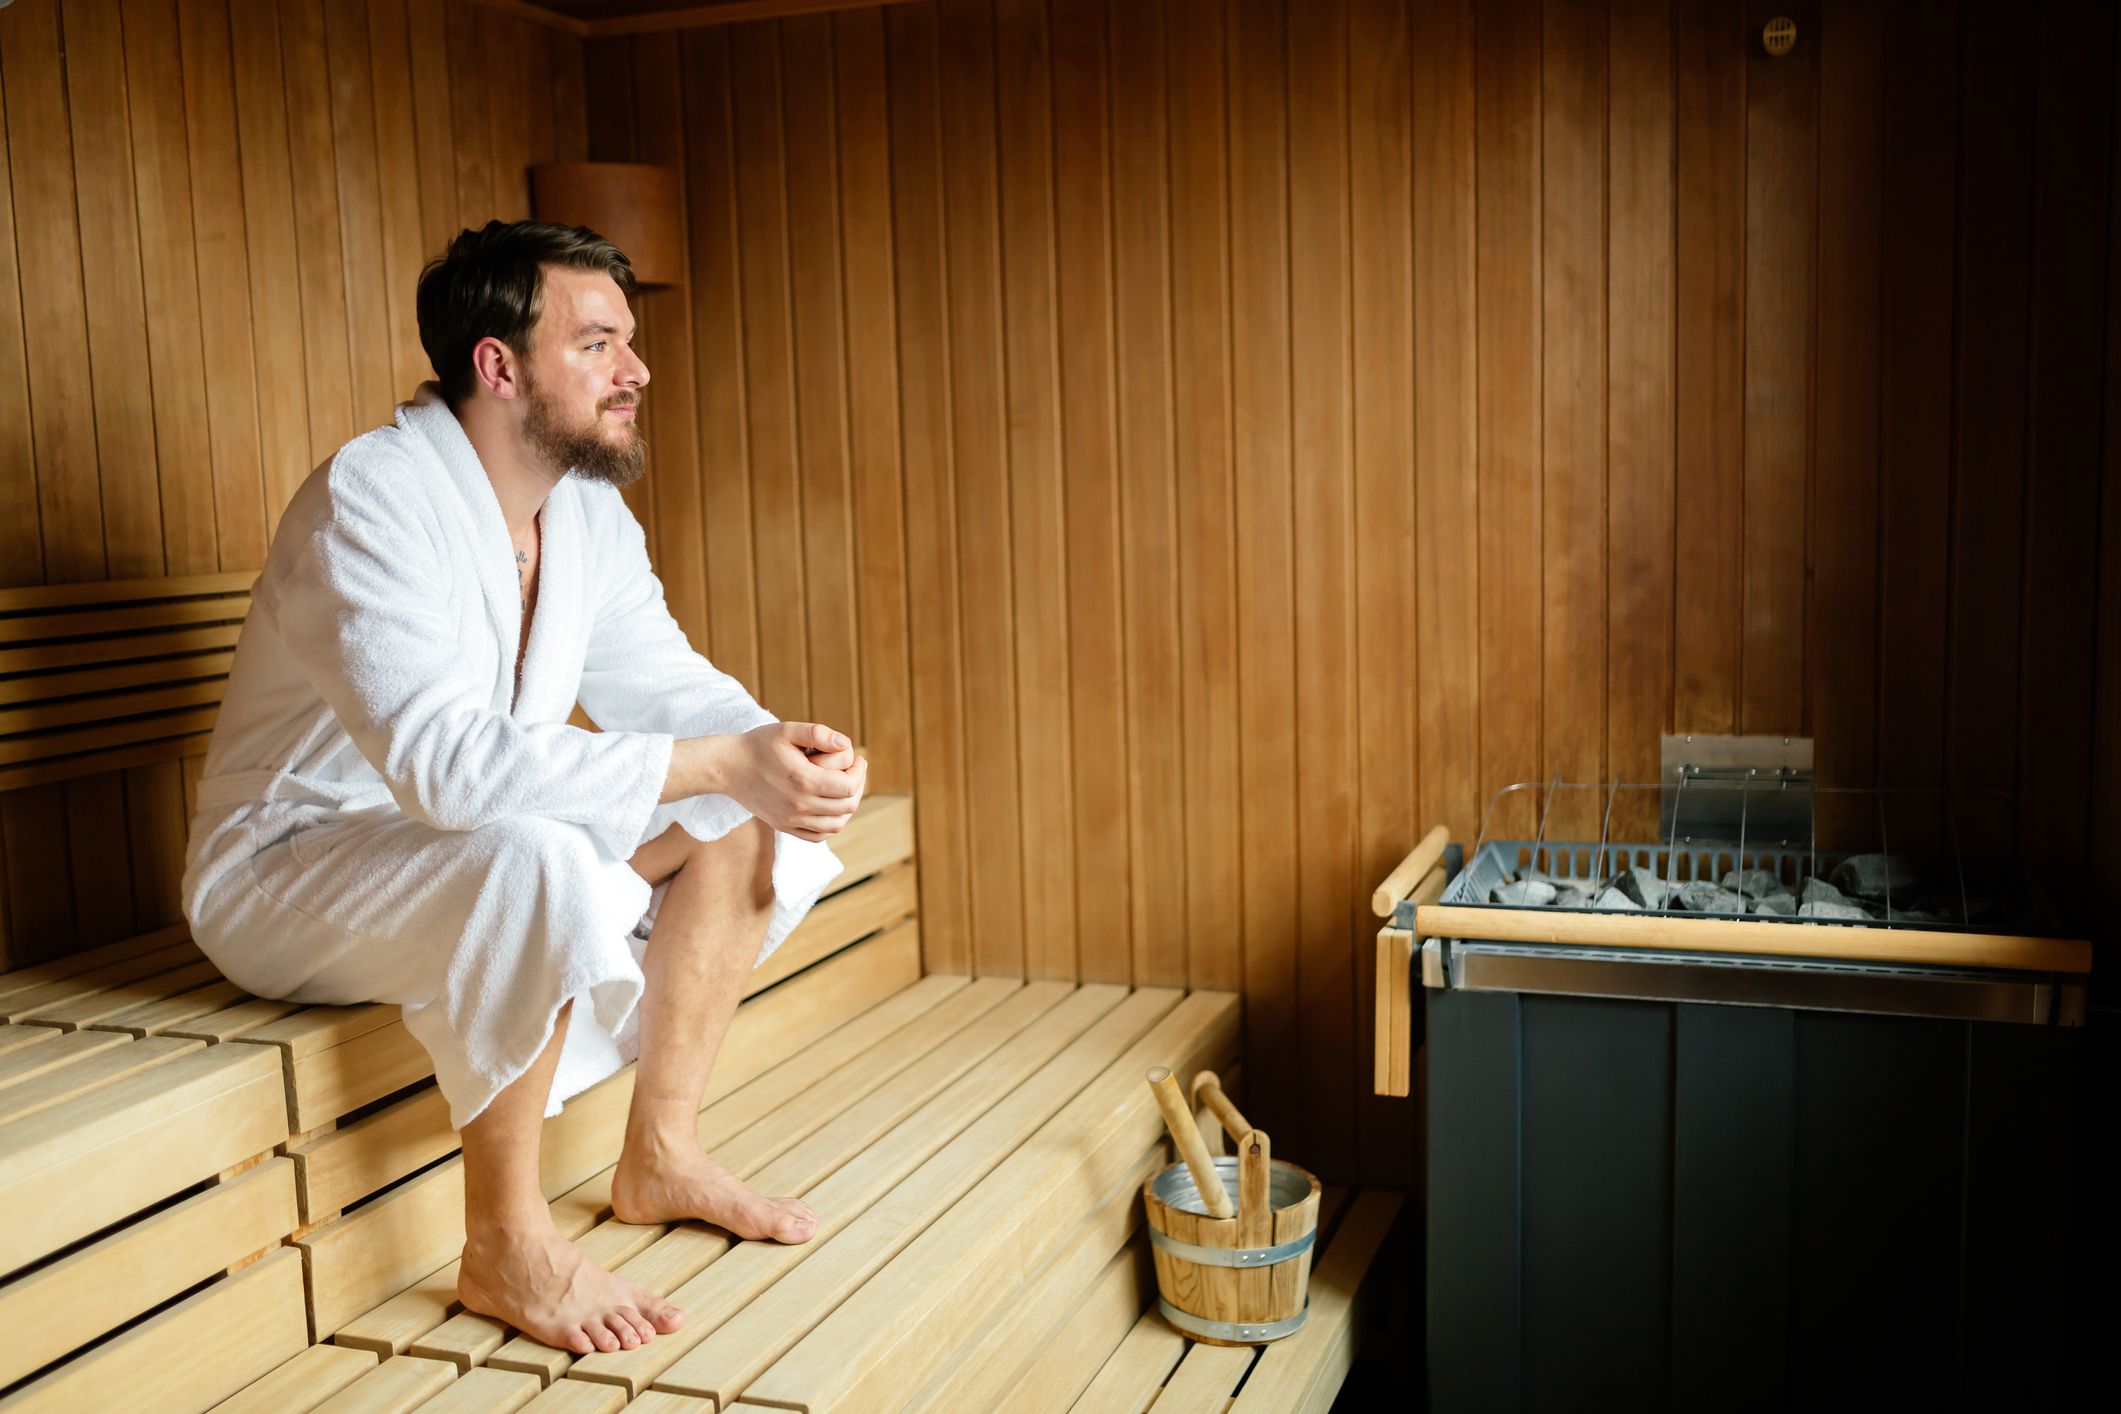 volume Stoel walgelijk 6 Health Benefits of Using the Sauna - Sauna After Working Out